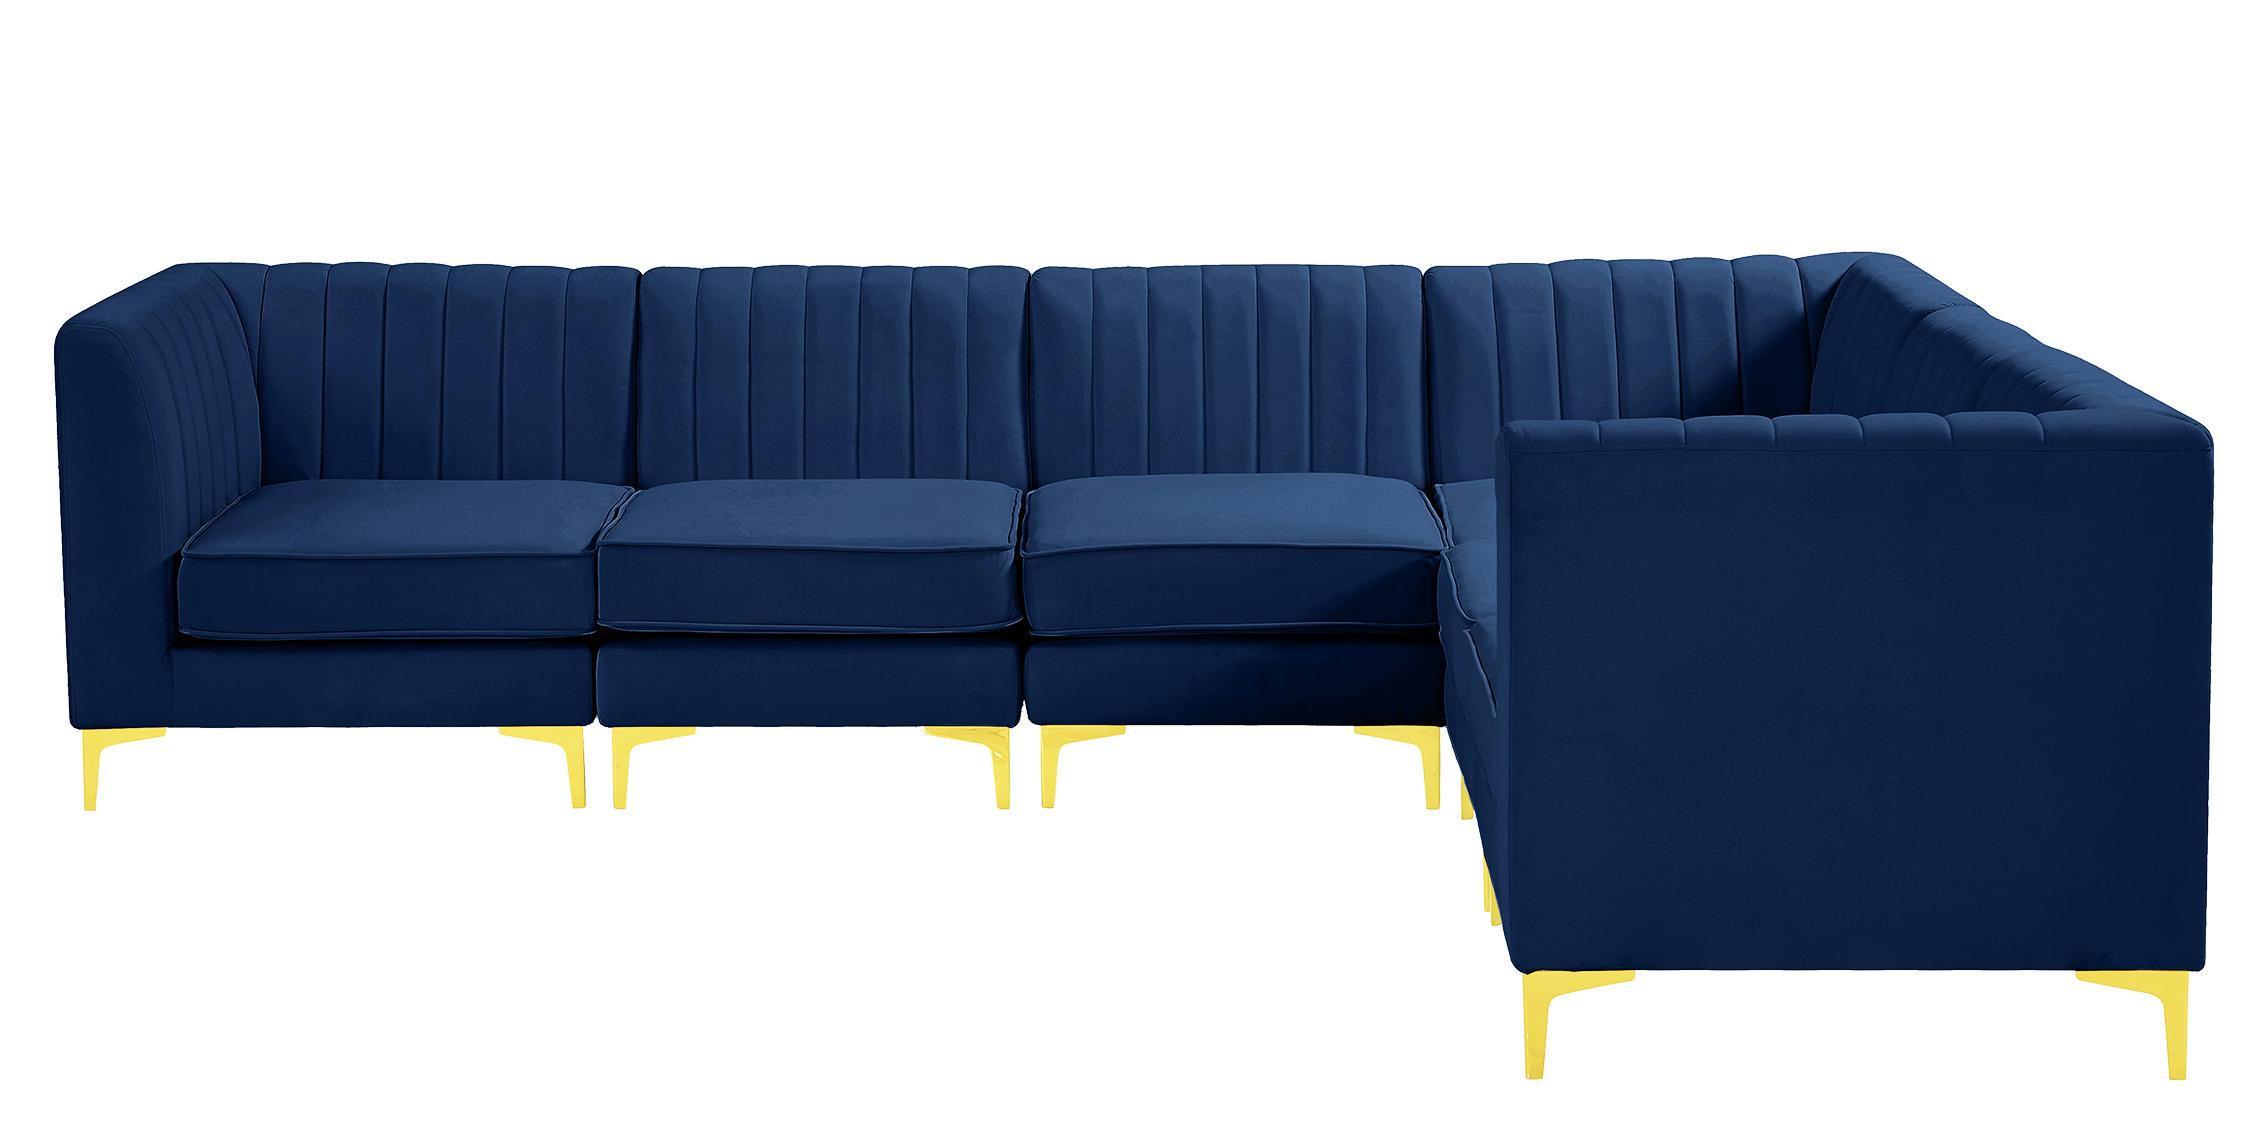 

    
604Navy-Sec6A Meridian Furniture Modular Sectional Sofa
